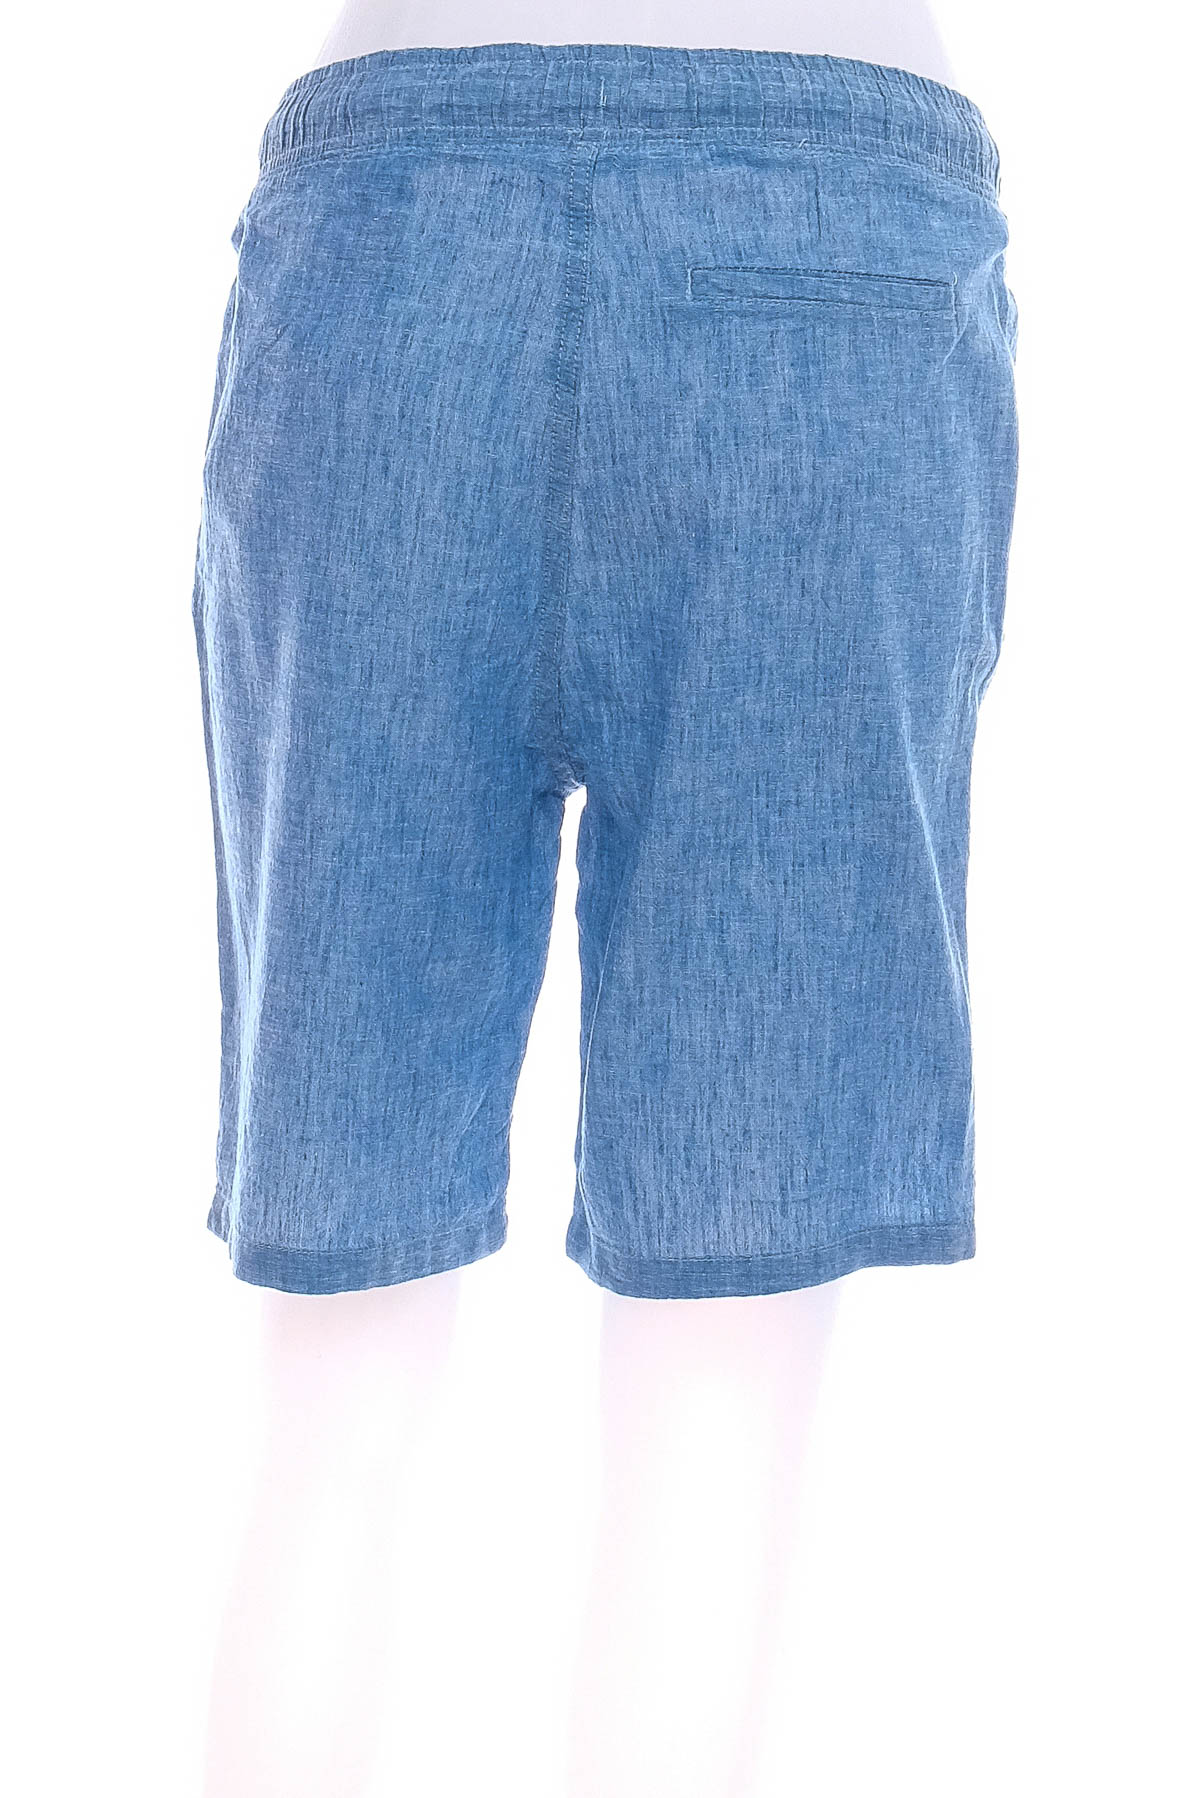 Pantaloni scurți pentru băiat - H&M - 1